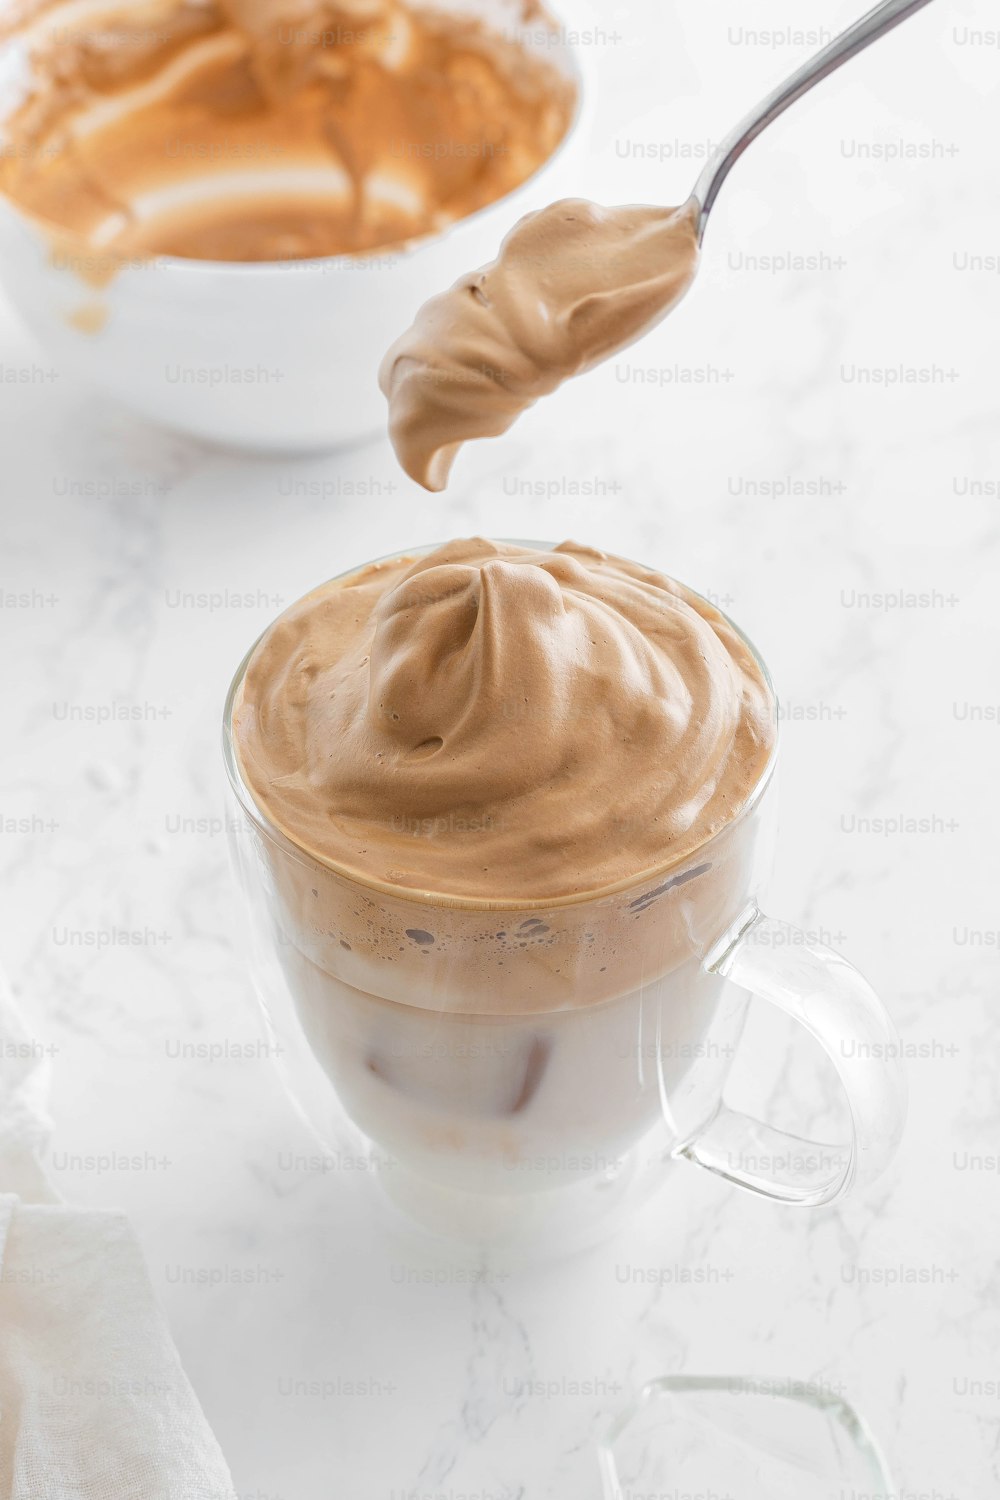 une cuillère dans une tasse de pudding au chocolat